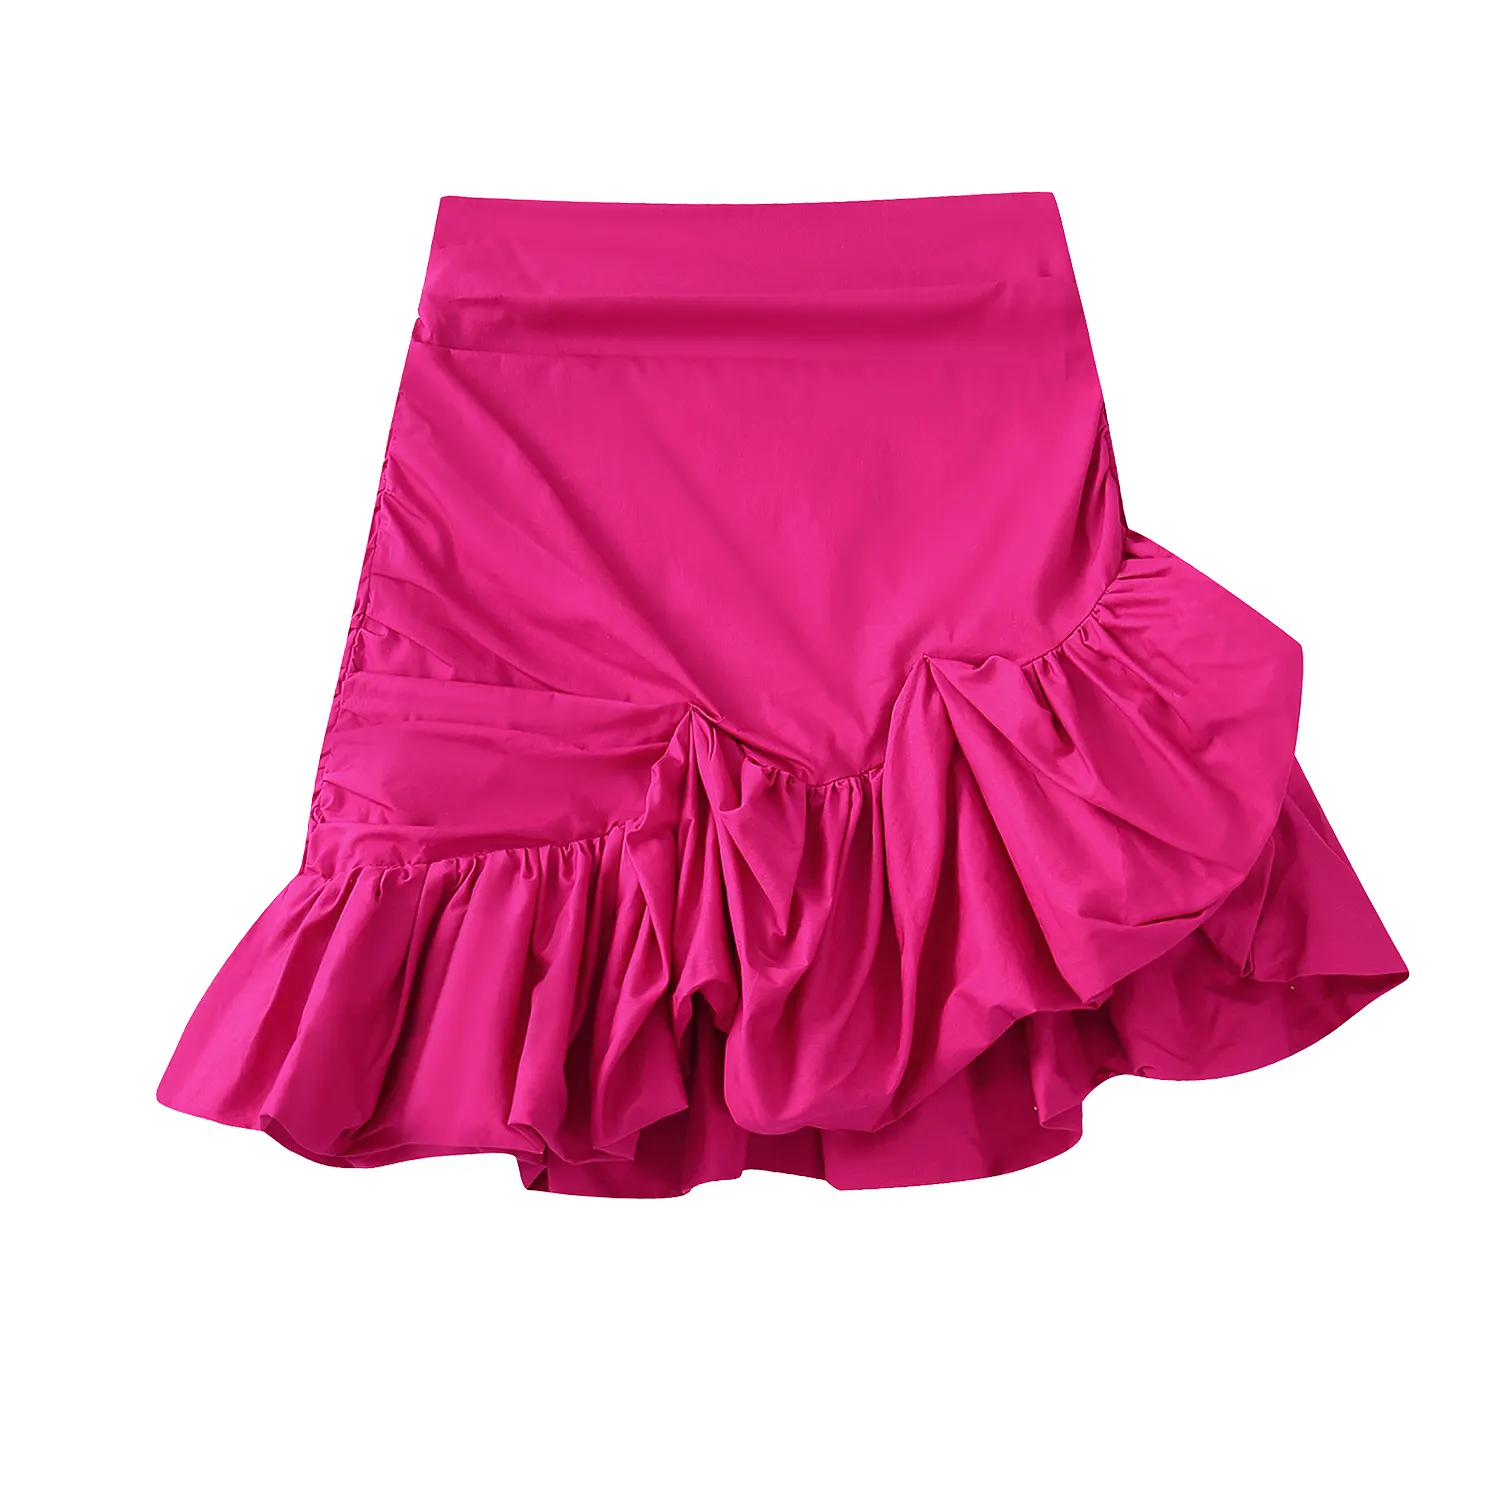 Rose madder color cute irregular design zipper fly women summer high street mini skirt